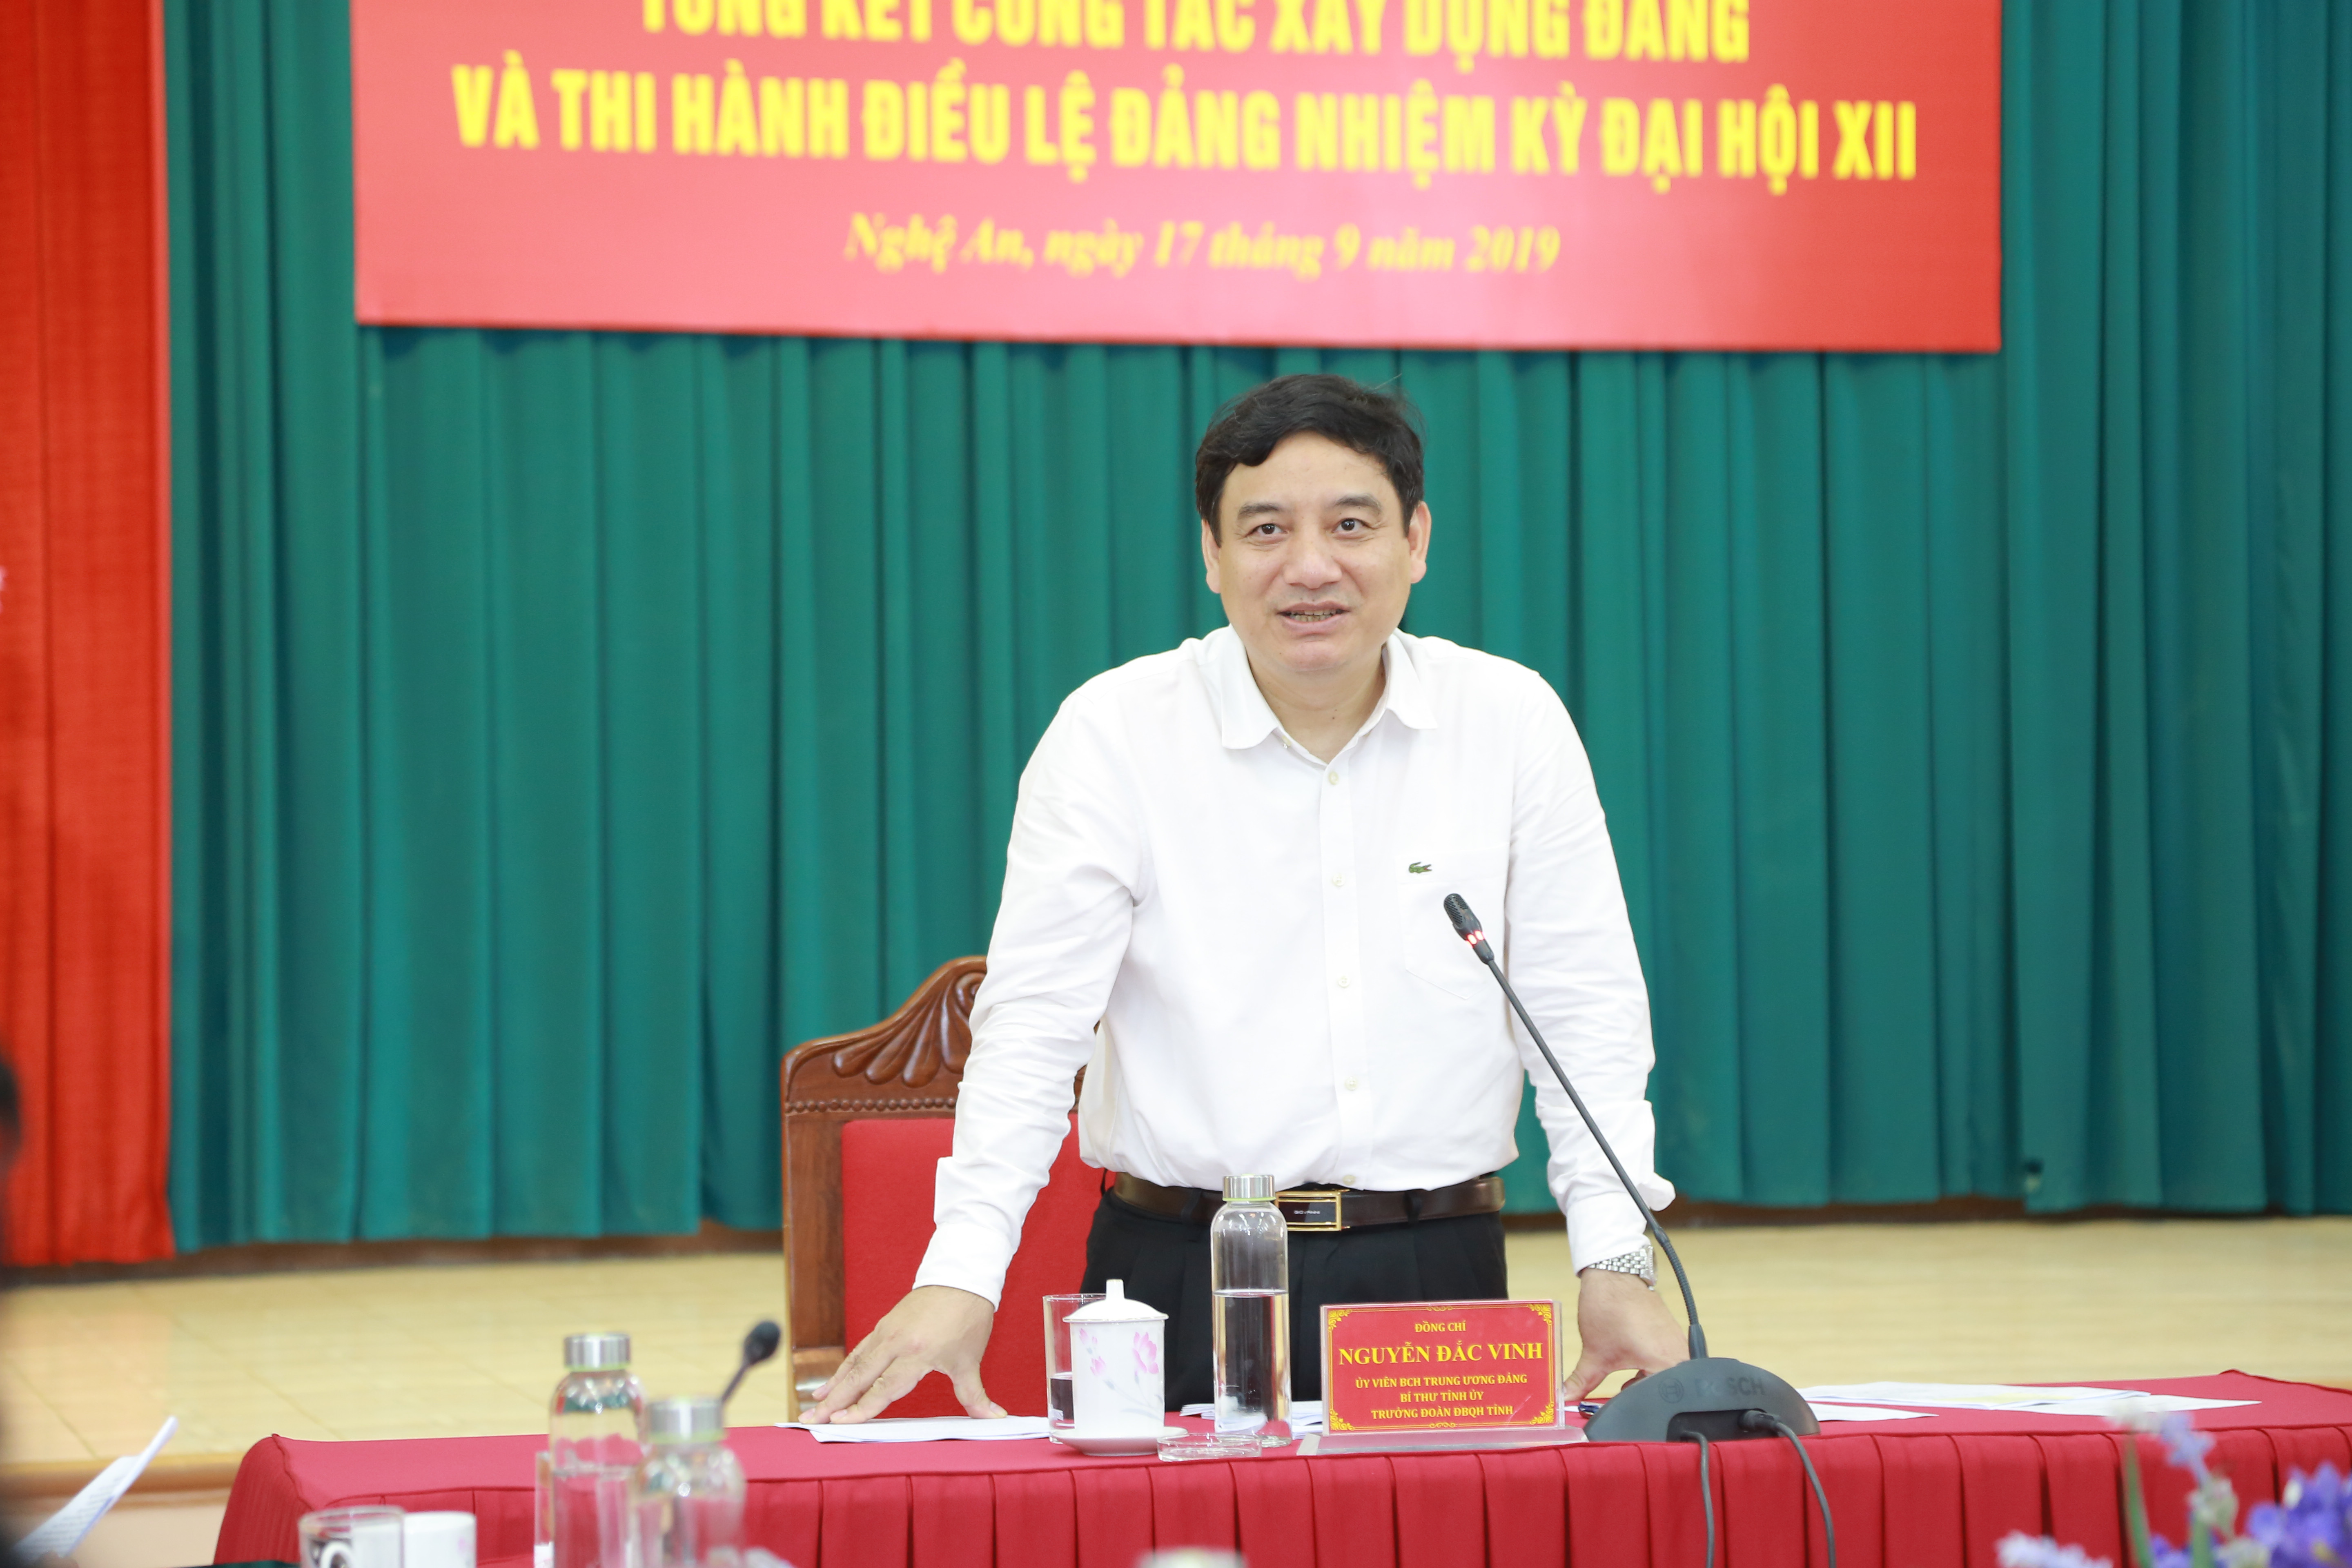 Bí thư Tỉnh ủy Nguyễn Đắc Vinh phát biểu tại hội nghị. Ảnh: Đào Tuấn